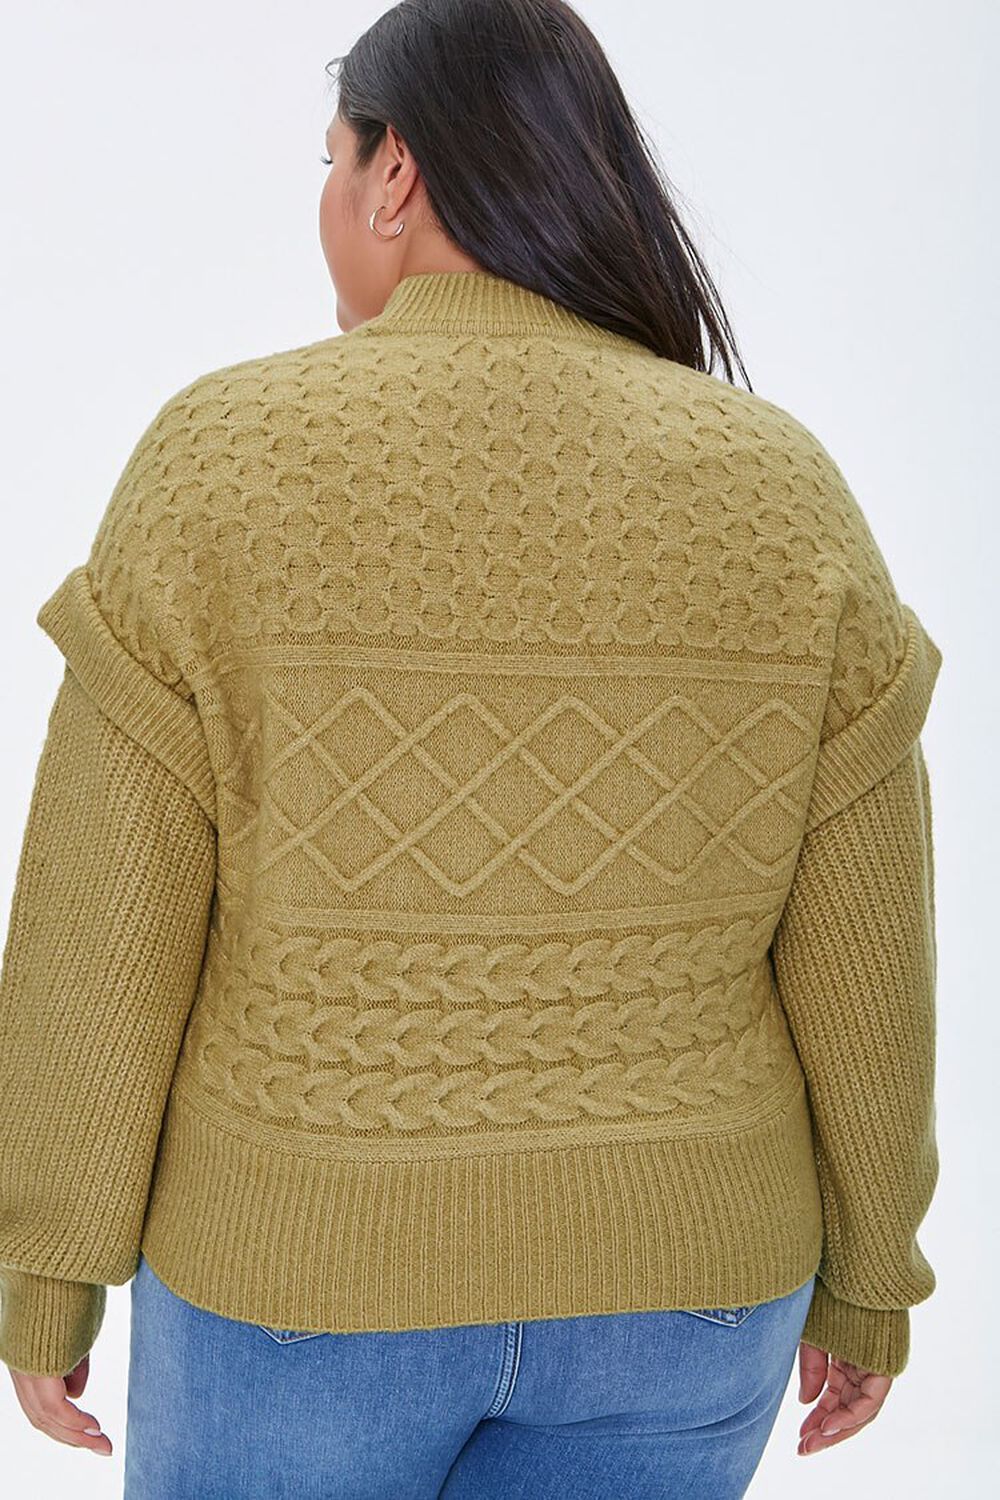 CITRON Plus Size Layered Mock Neck Sweater, image 3